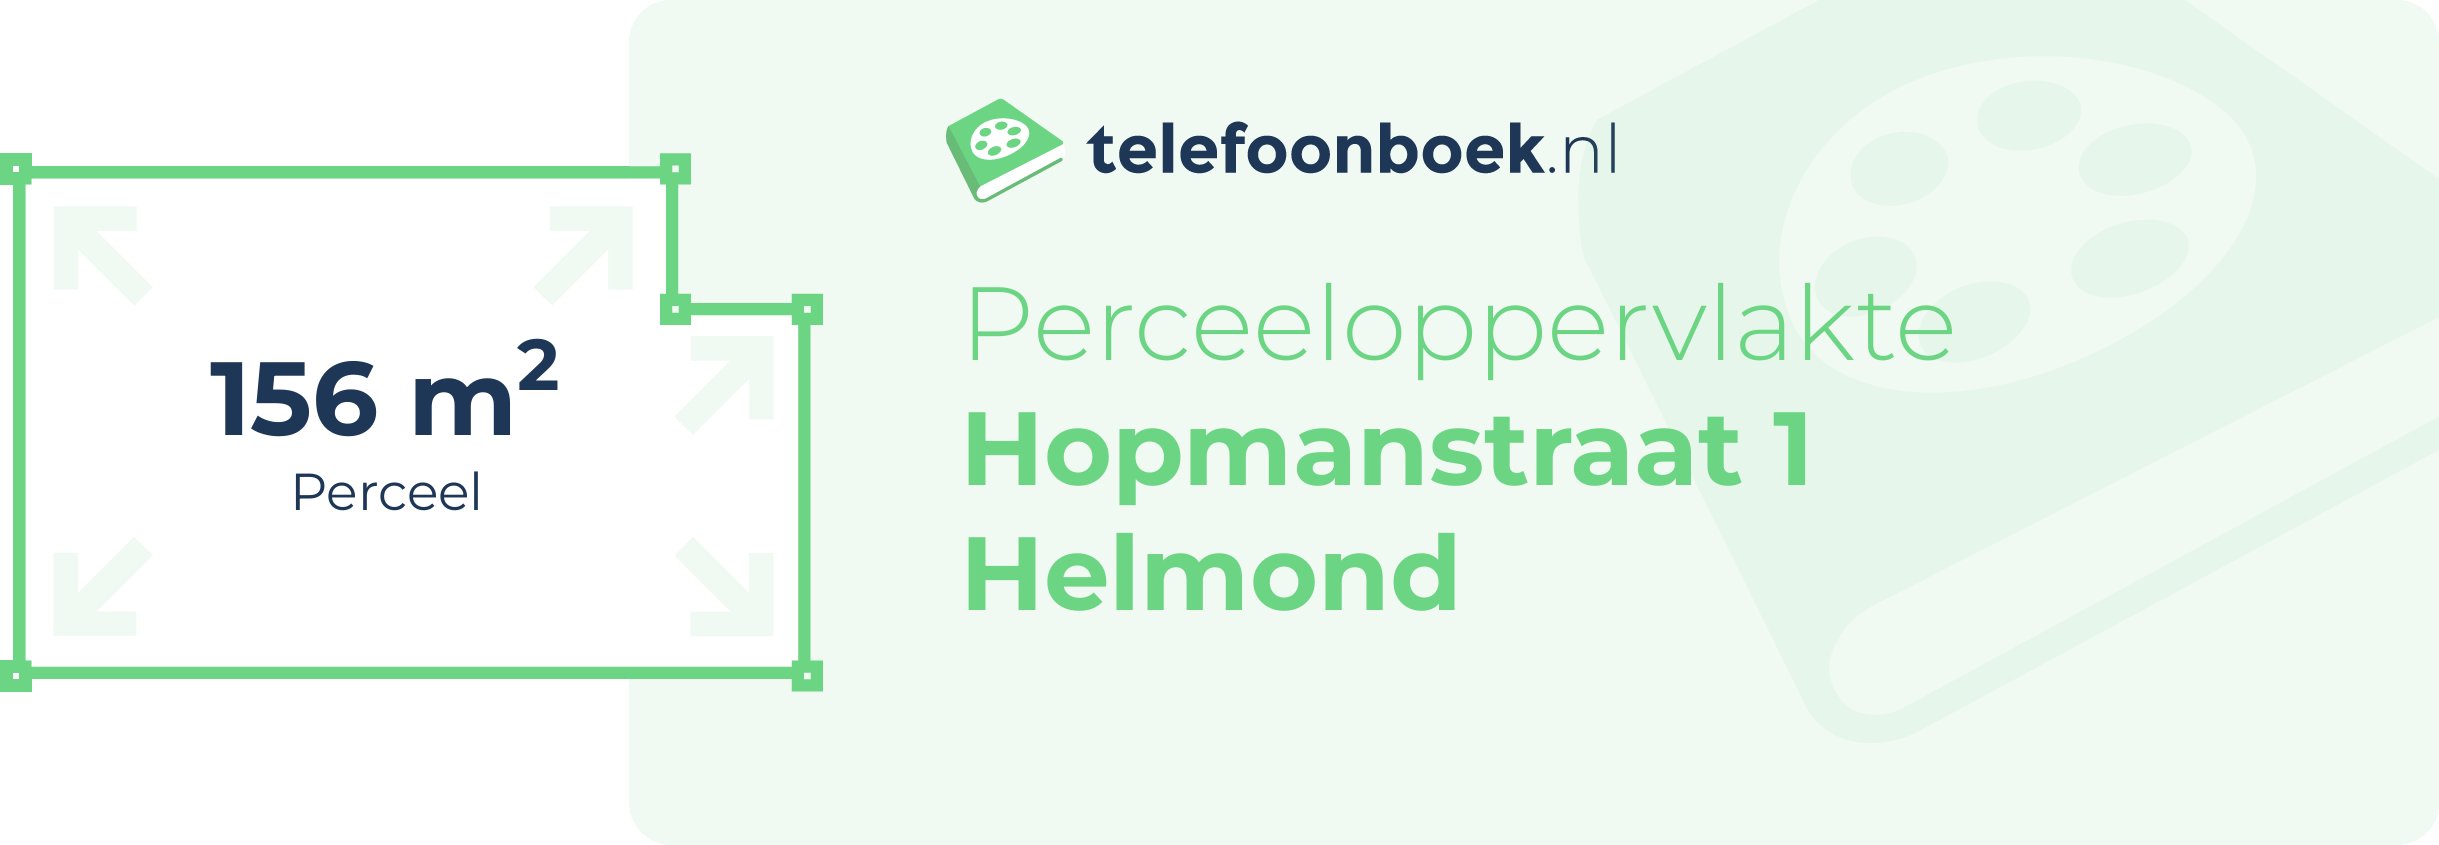 Perceeloppervlakte Hopmanstraat 1 Helmond